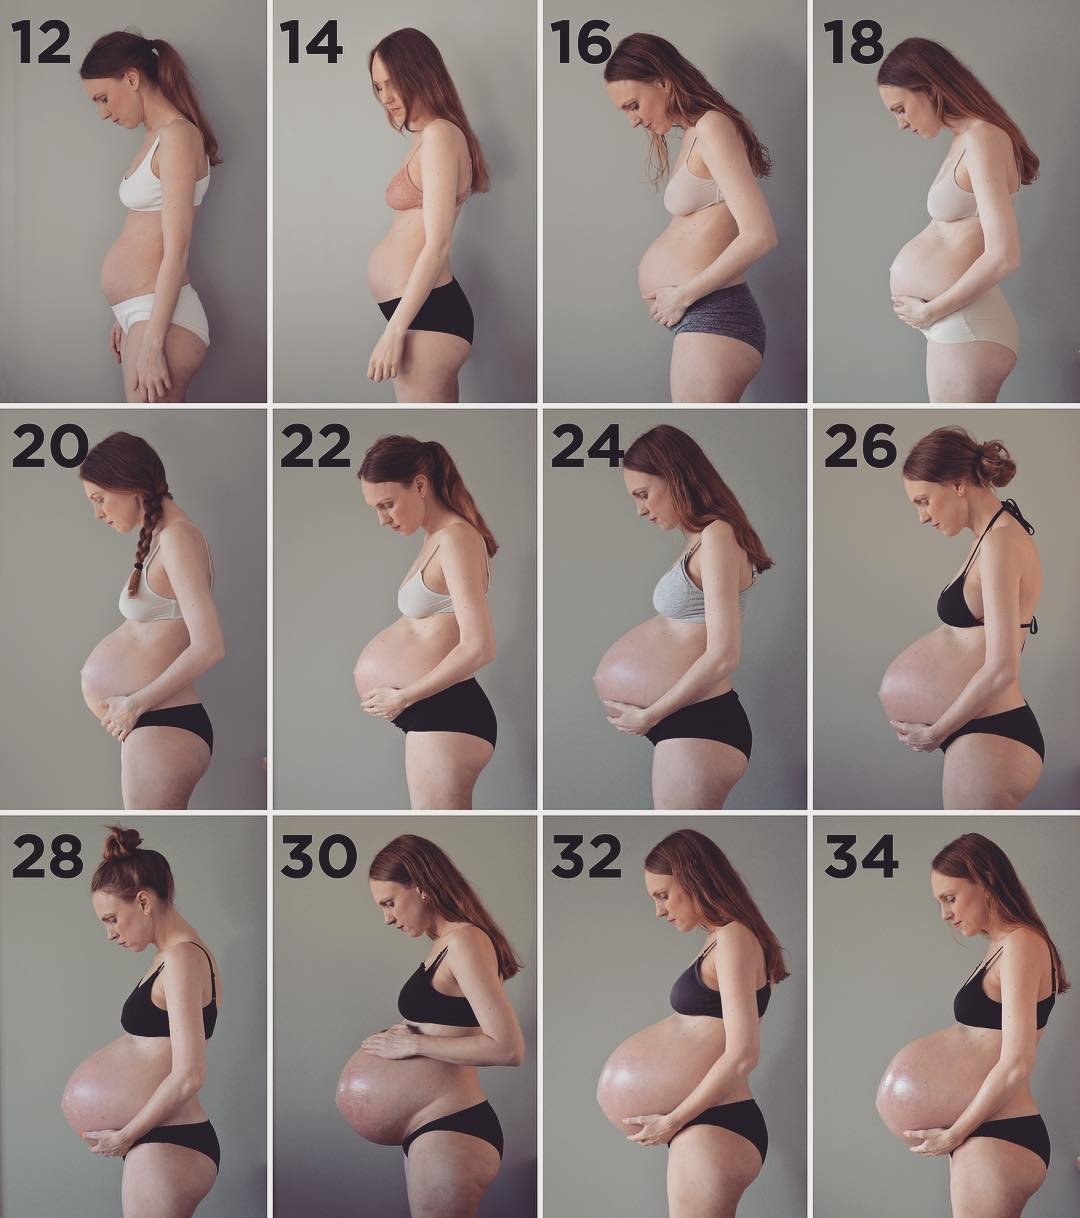 Maria mostra a linha do tempo de sua gravidez em semanas (Foto: Reprodução/Instagram)